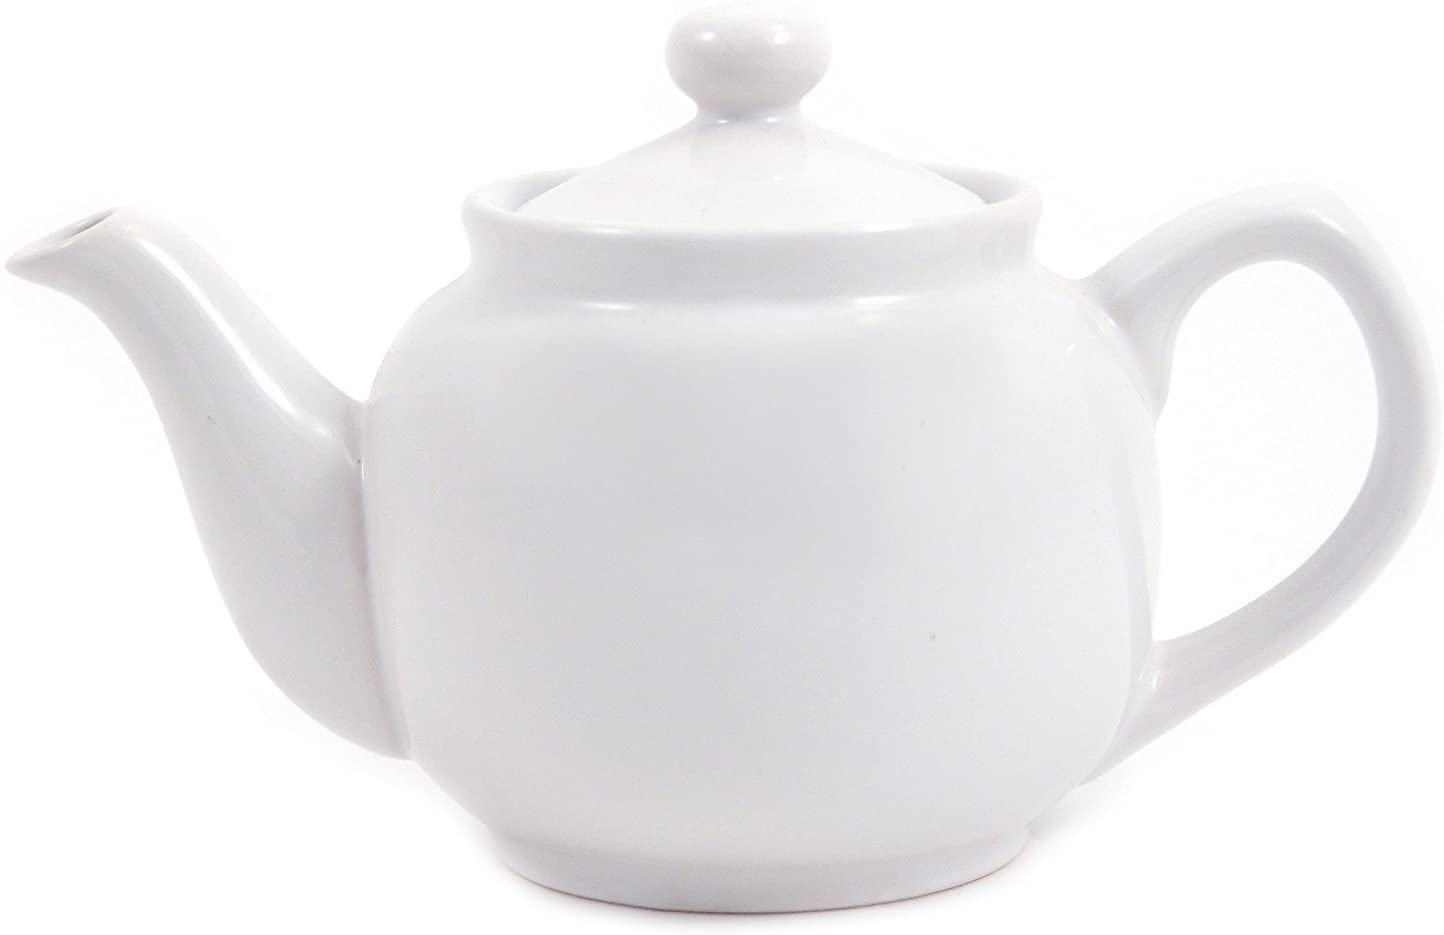 2 Cup Hampton Teapot – White